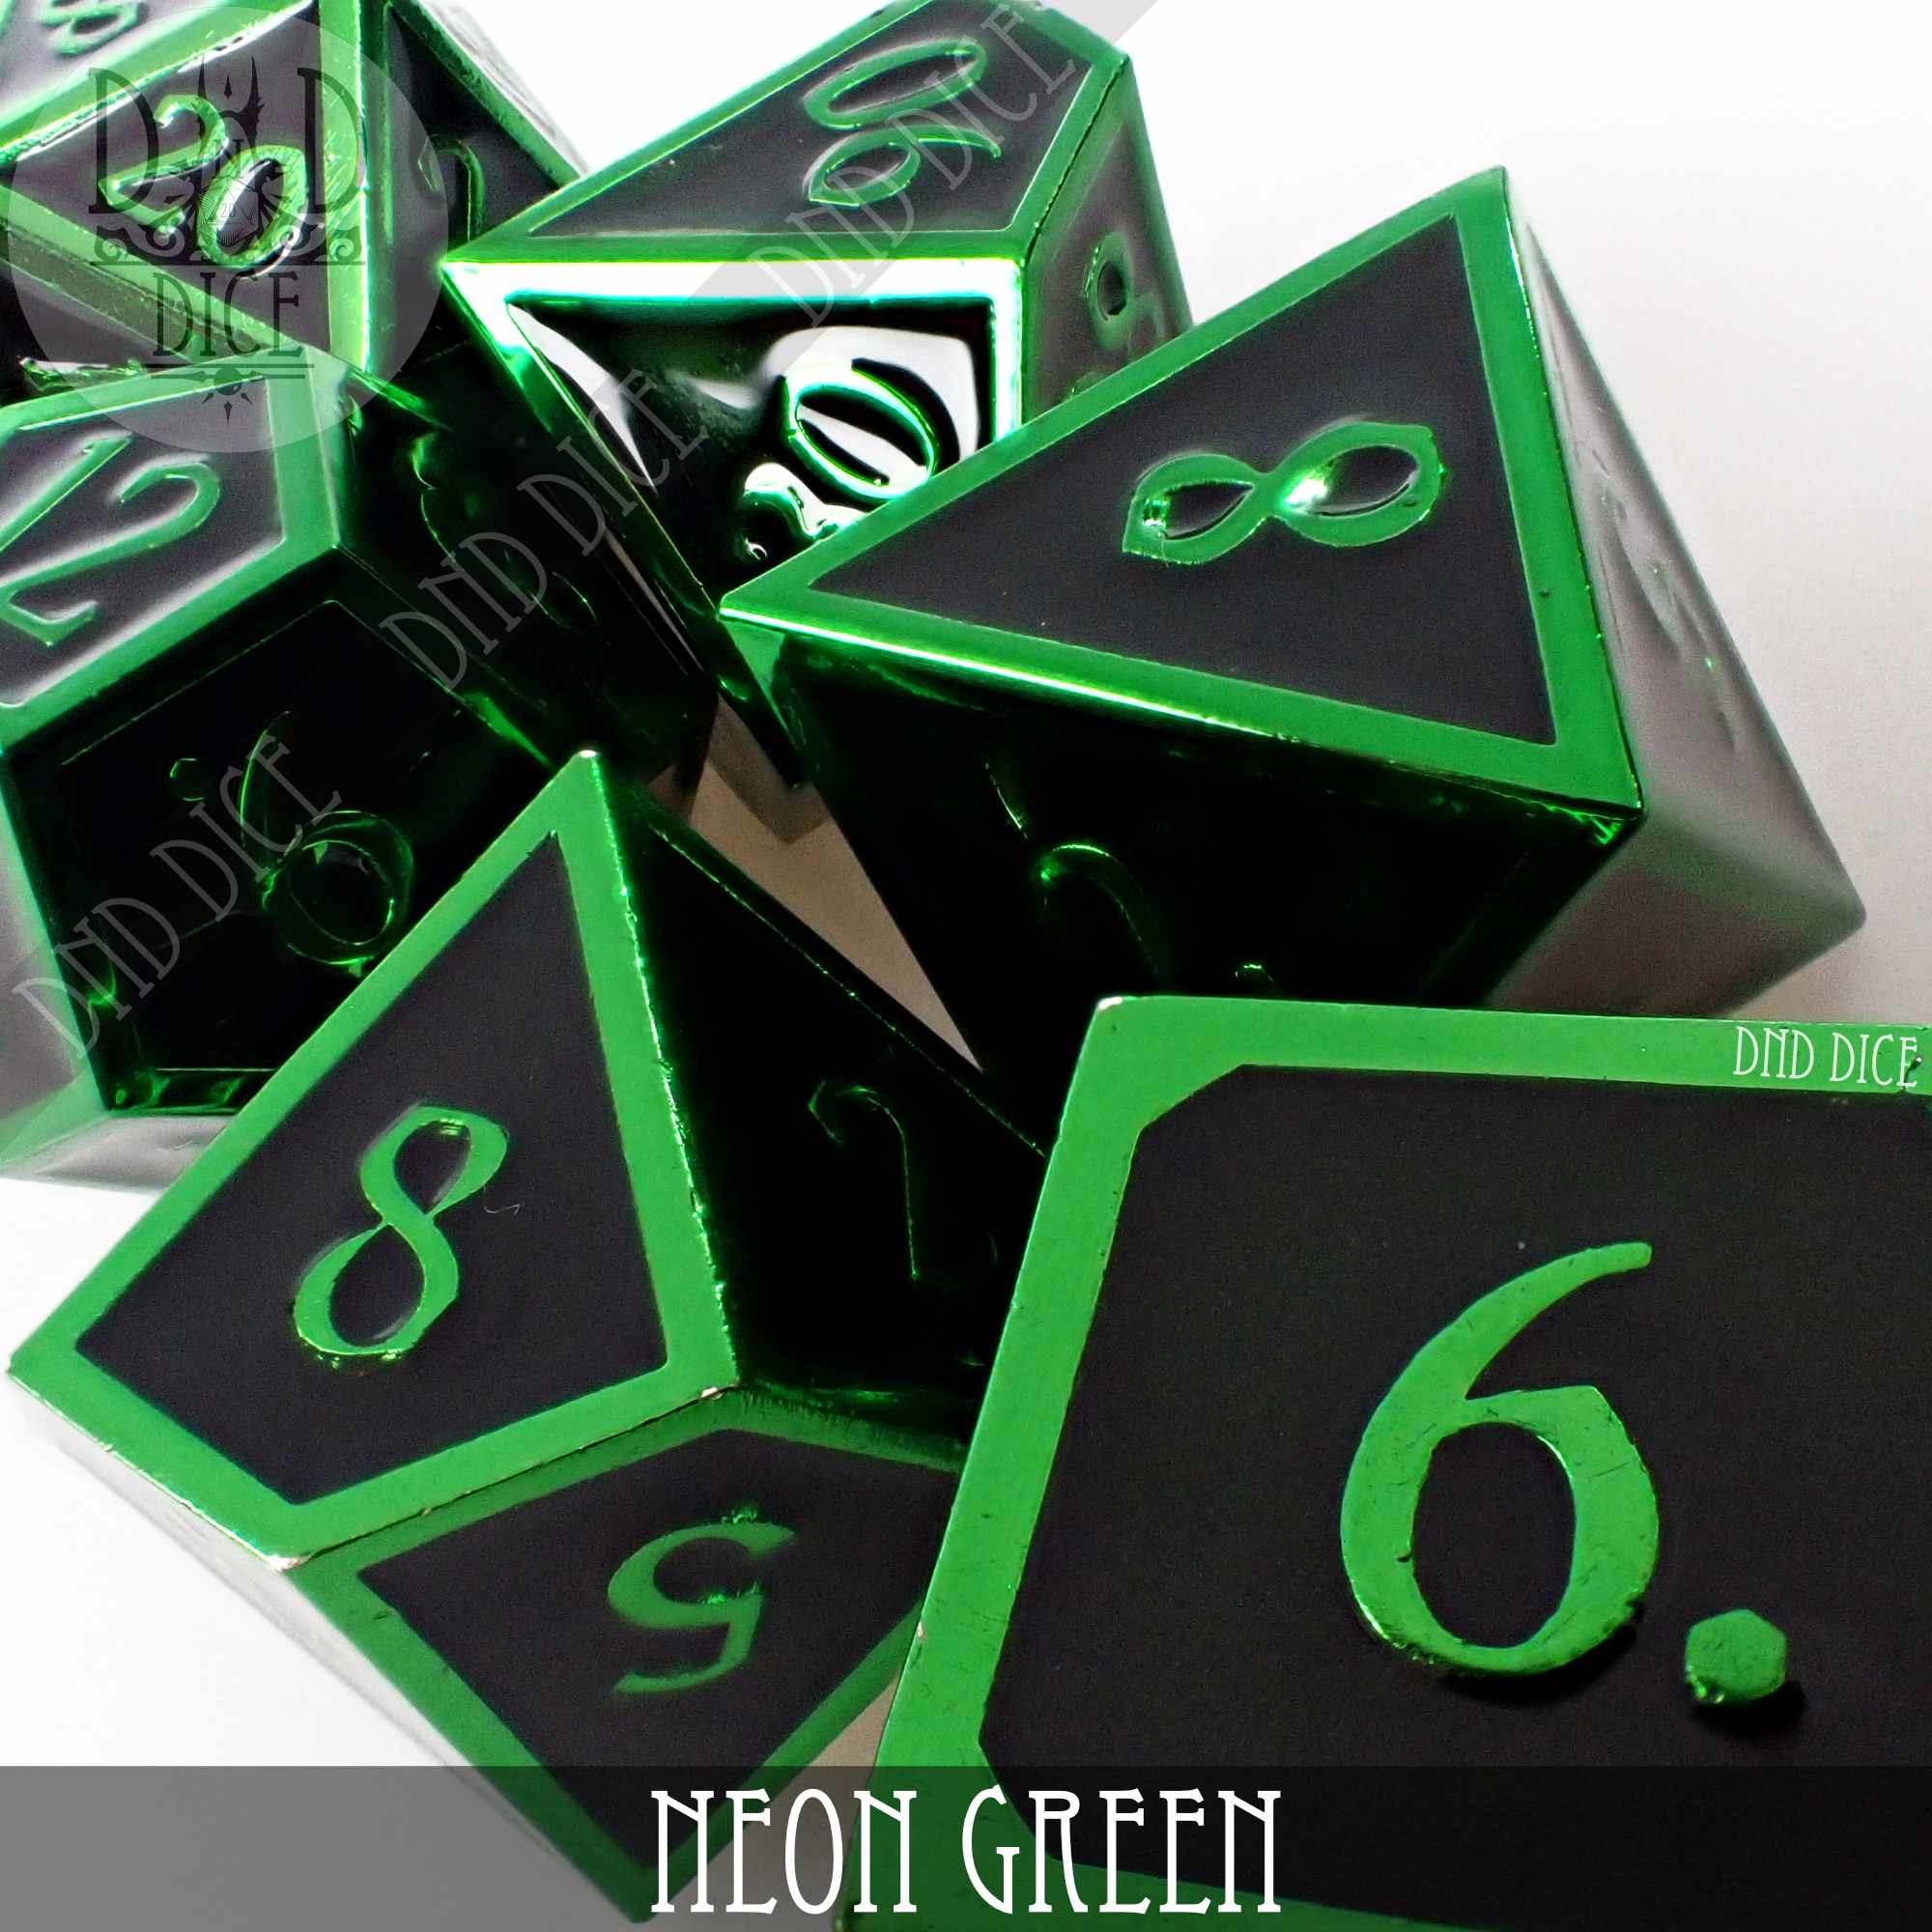 3D Neon Green Metal Dice Set